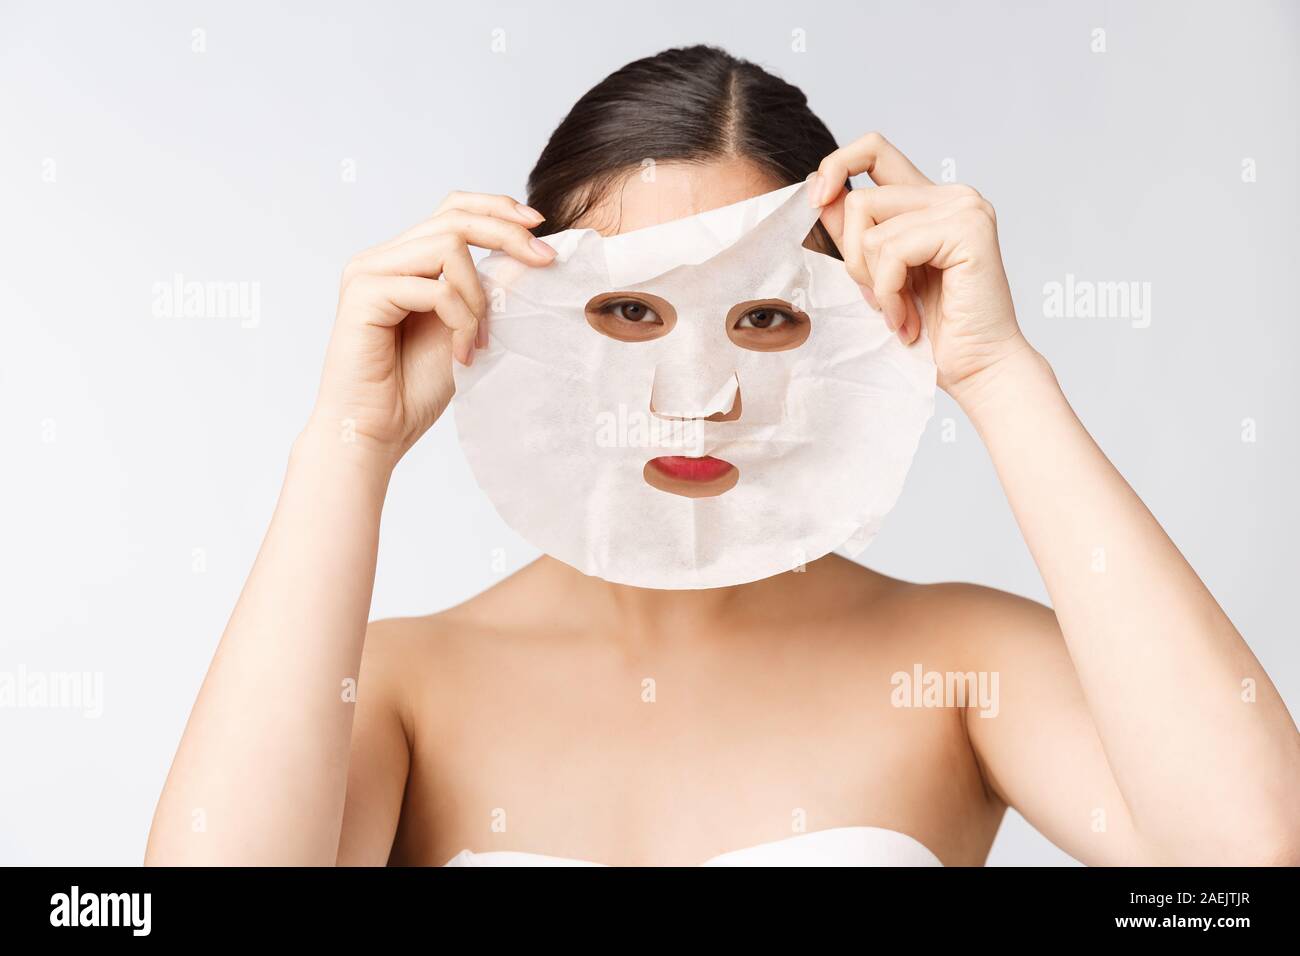 Можно использовать тканевую маску повторно. Тканевые маски для лица. Девушка с тканевой маской на лице. Девушка в тканевой маске. Реклама тканевых масок для лица.